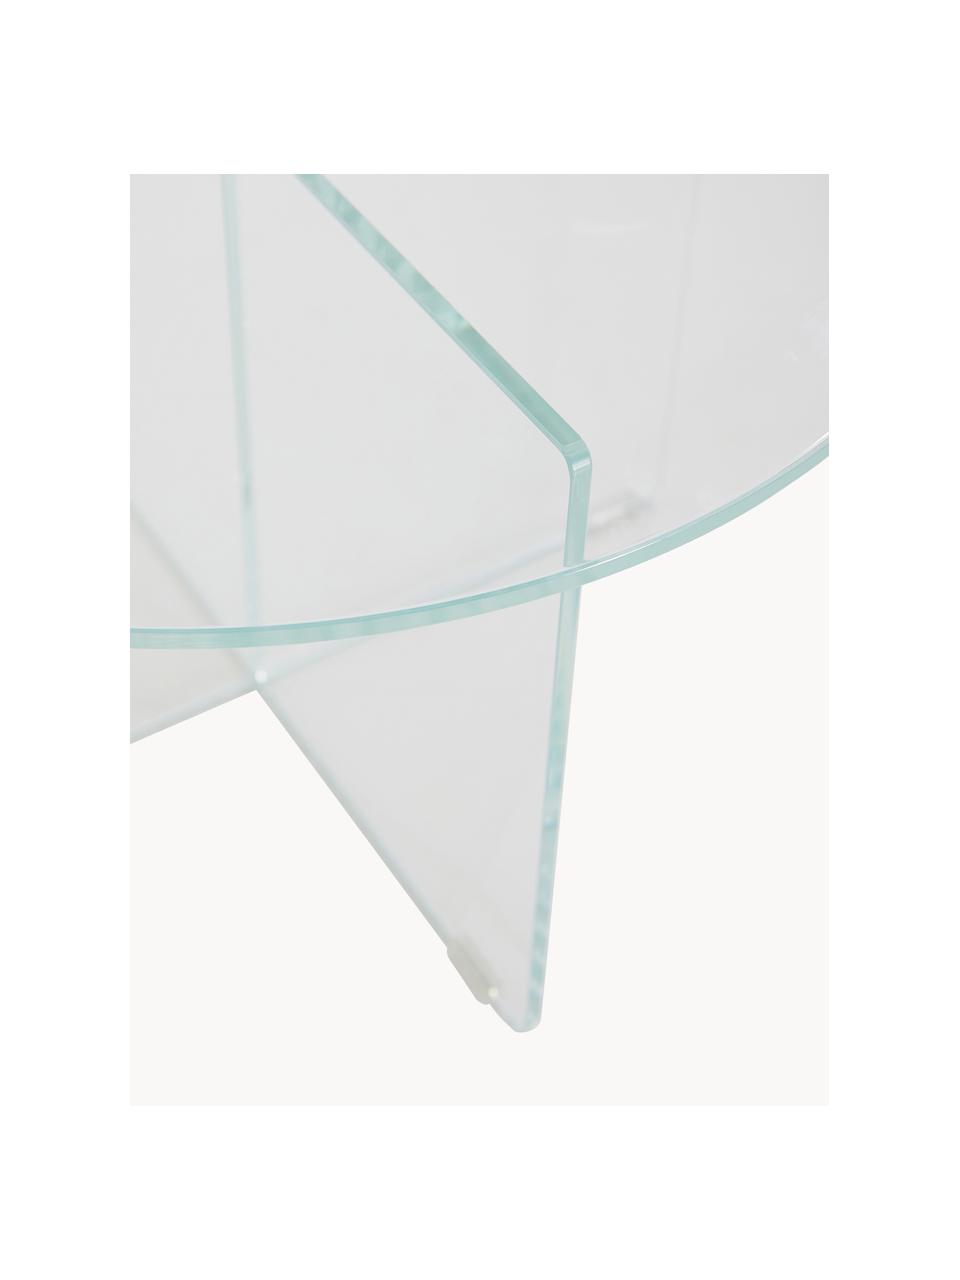 Okrągły stolik kawowy ze szklanym blatem Iris, Szkło hartowane, Transparentny, Ø 60 cm